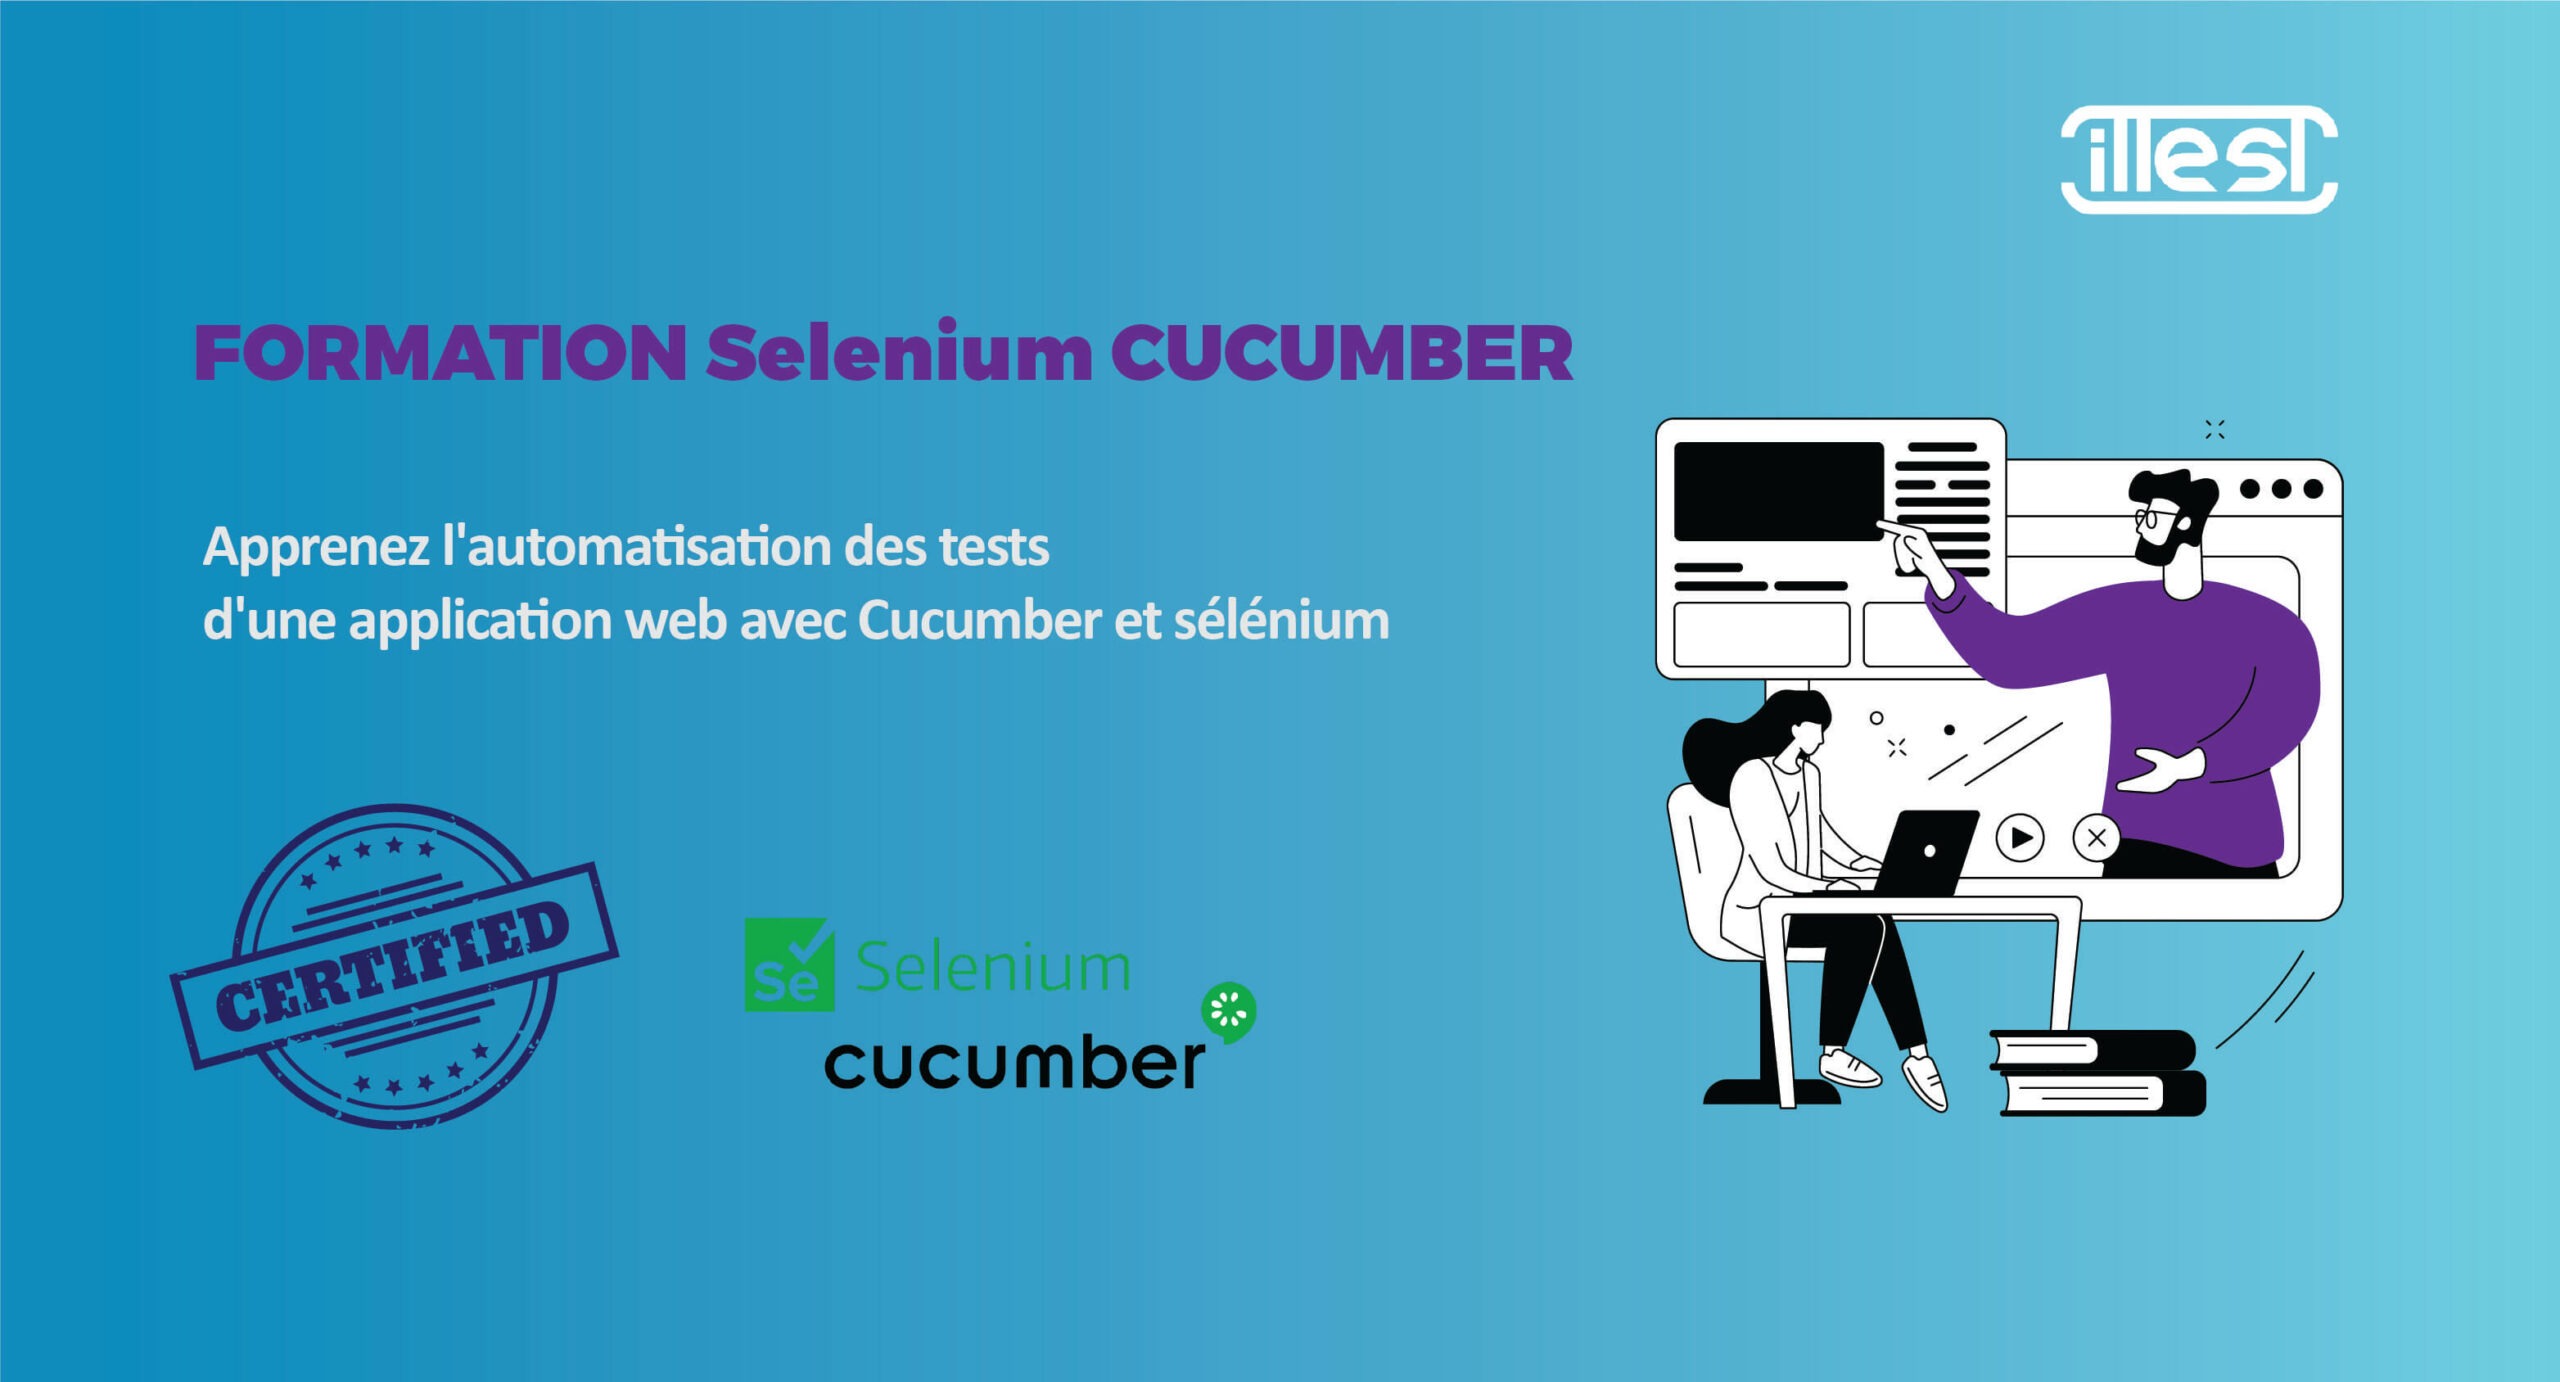 Formation Selenium Cucumber